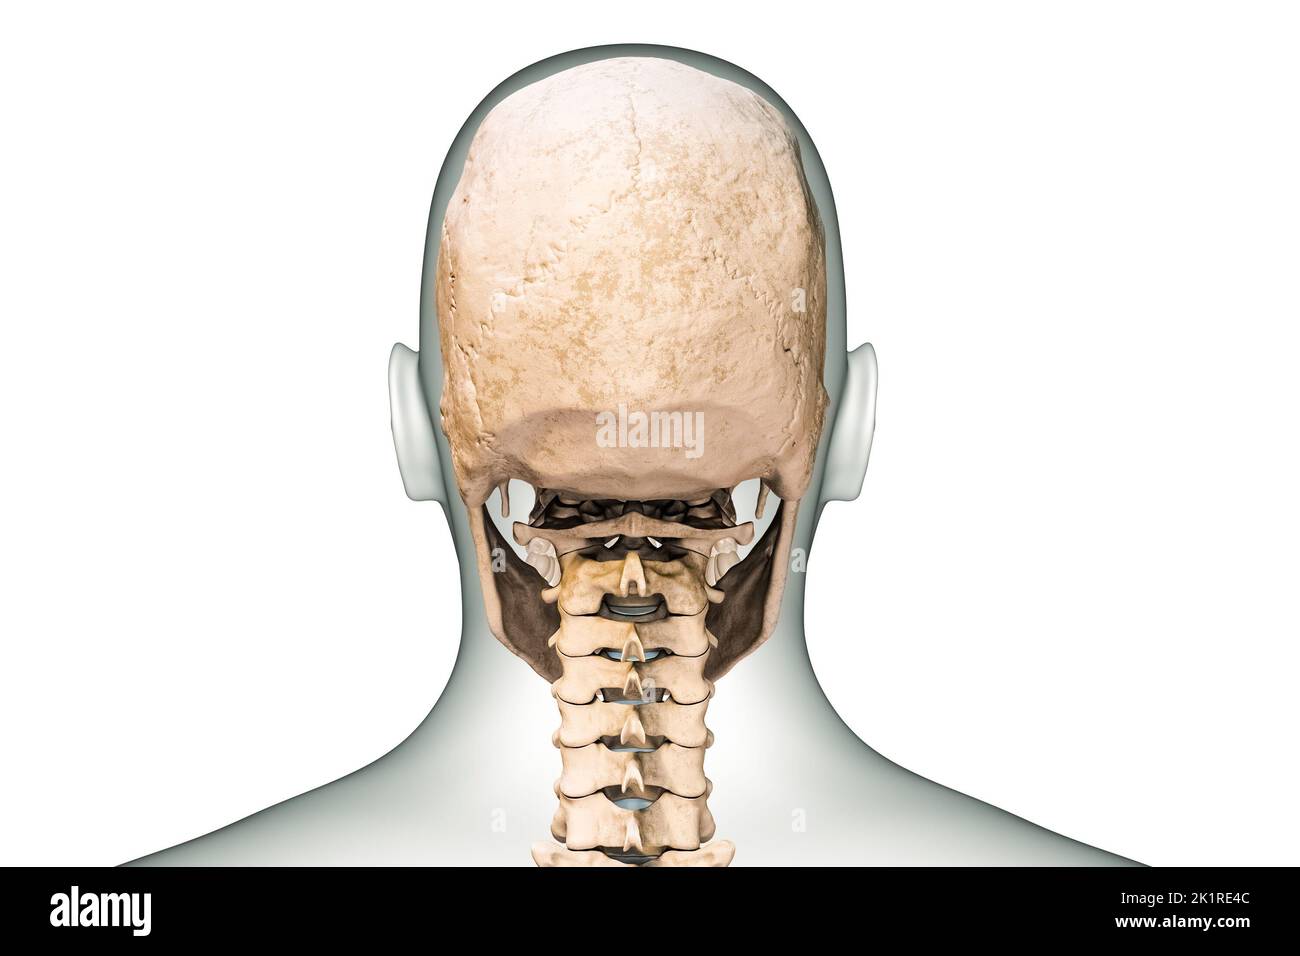 Vista posterior o posterior del cráneo o huesos de la cabeza humanos con vértebras cervicales y contornos del cuerpo 3D que muestra la ilustración aislada sobre fondo blanco. Foto de stock